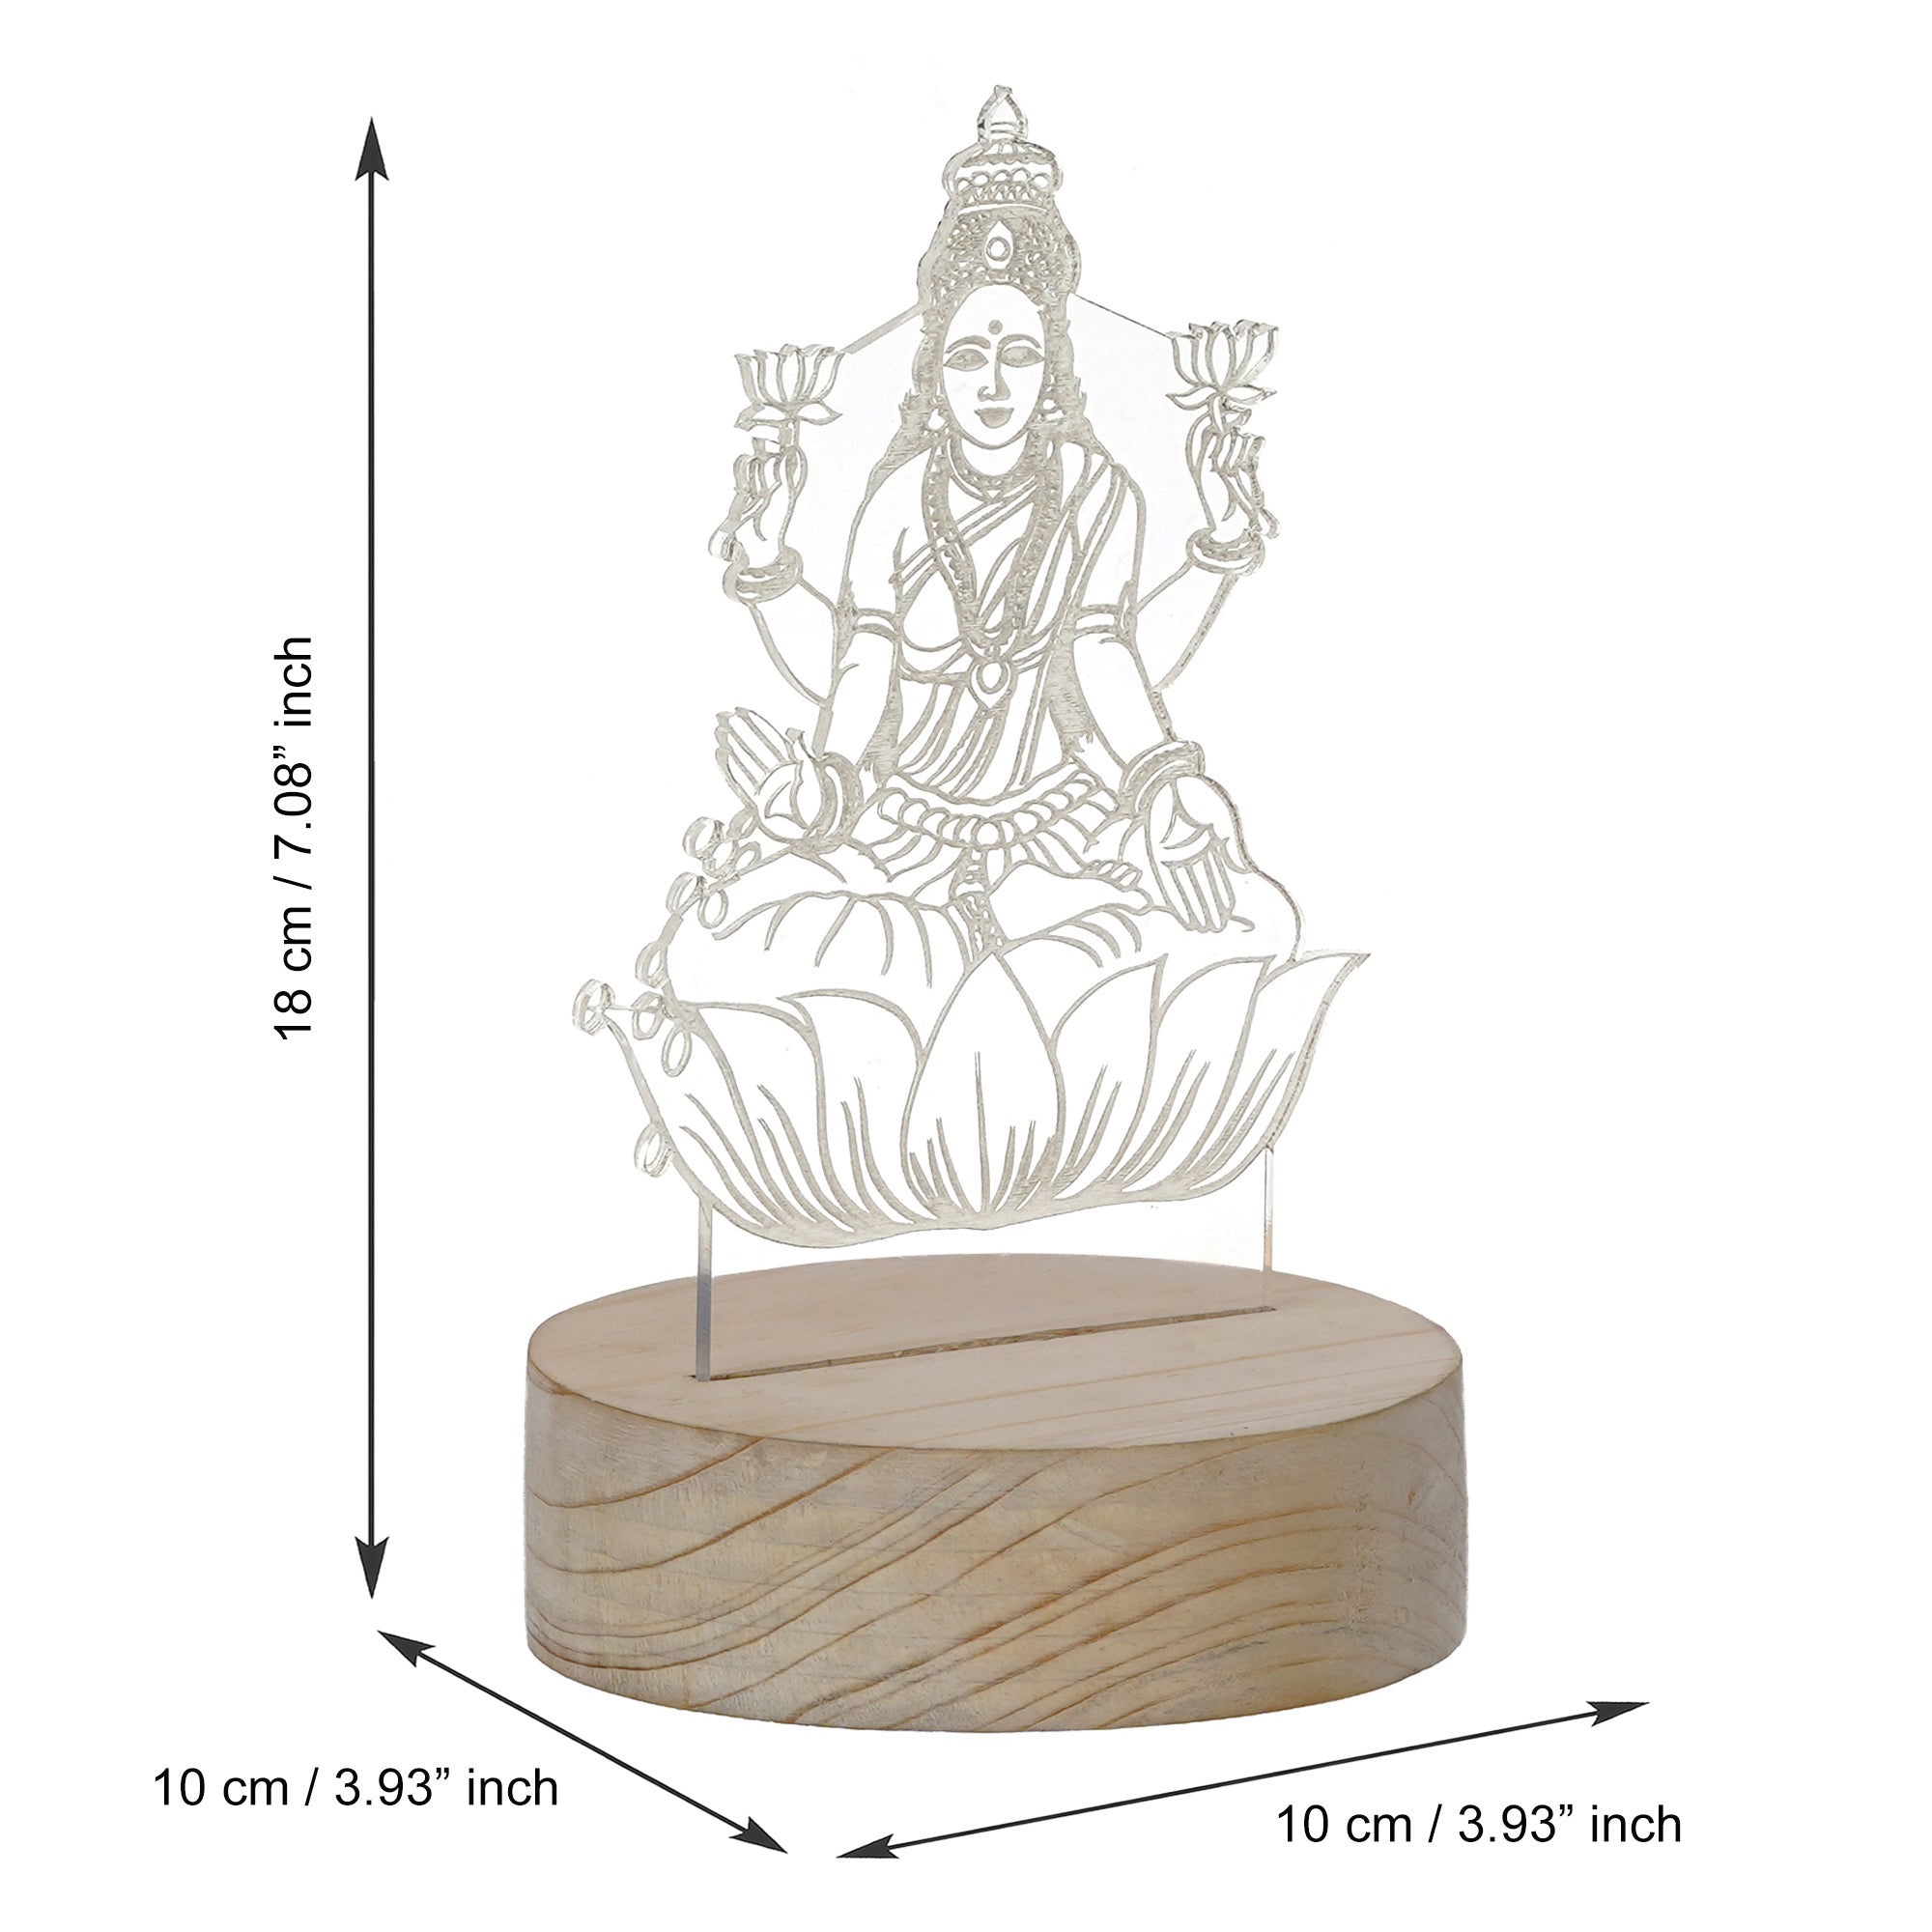 Goddess Laxmi Design Carved on Acrylic & Wood Base Night Lamp 3